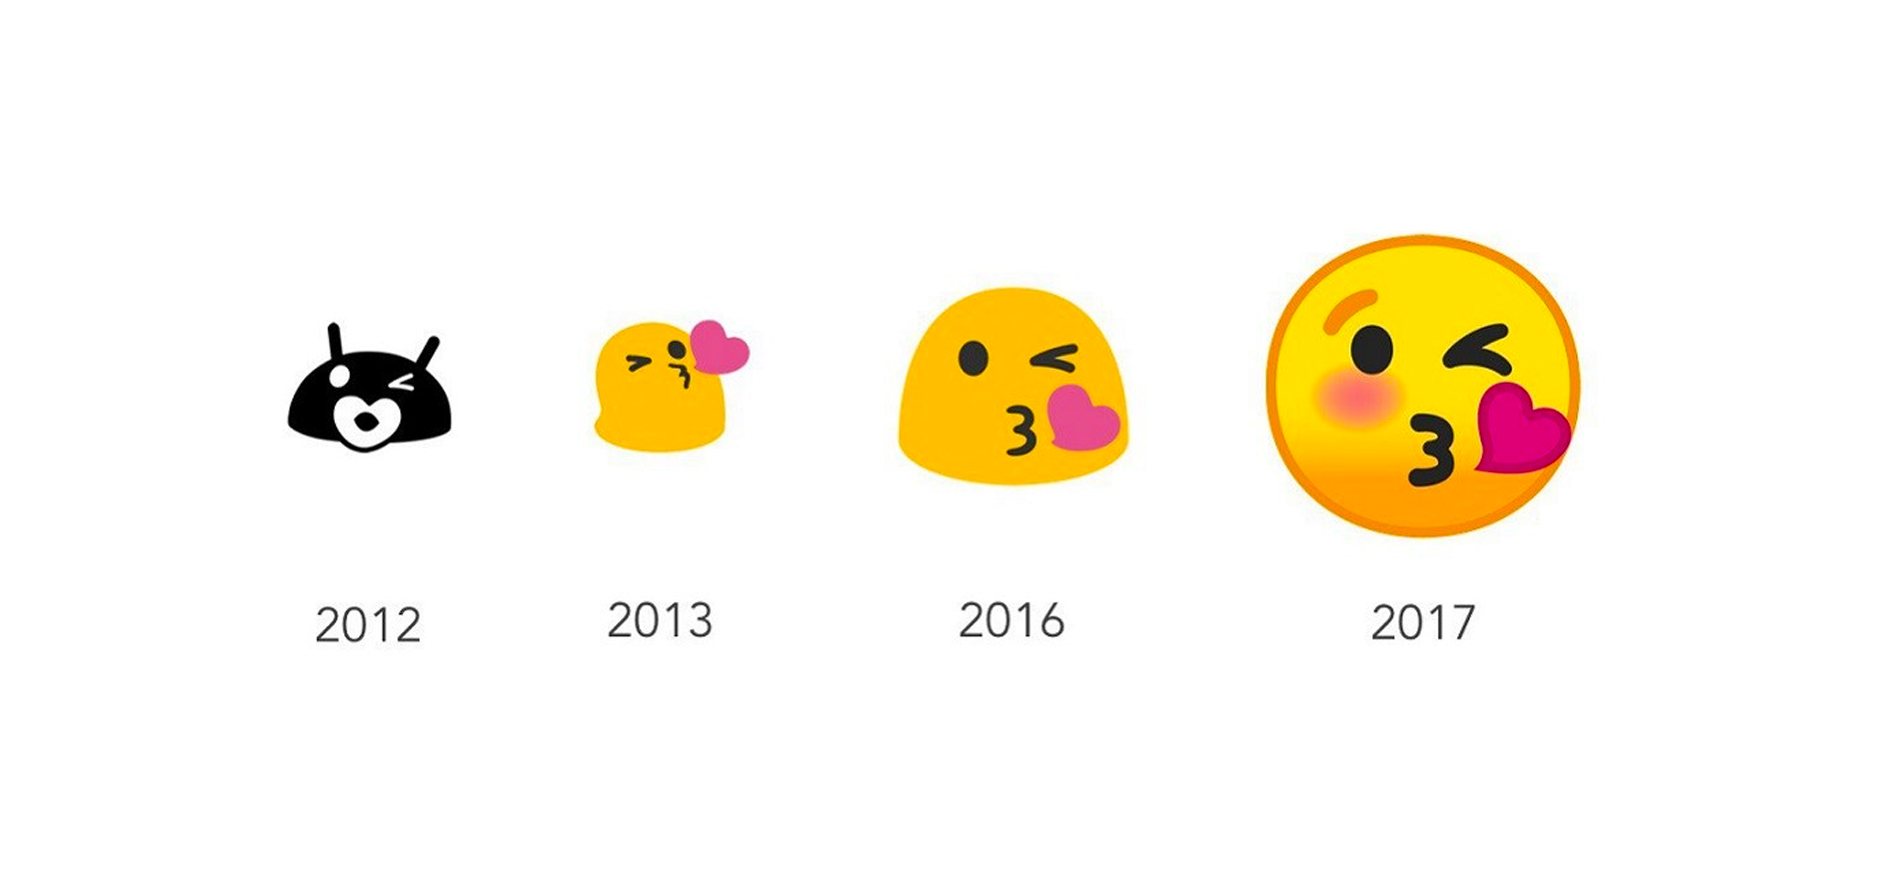 Google nói lời tạm biệt với emoji blob theo một cách đầy sáng tạo